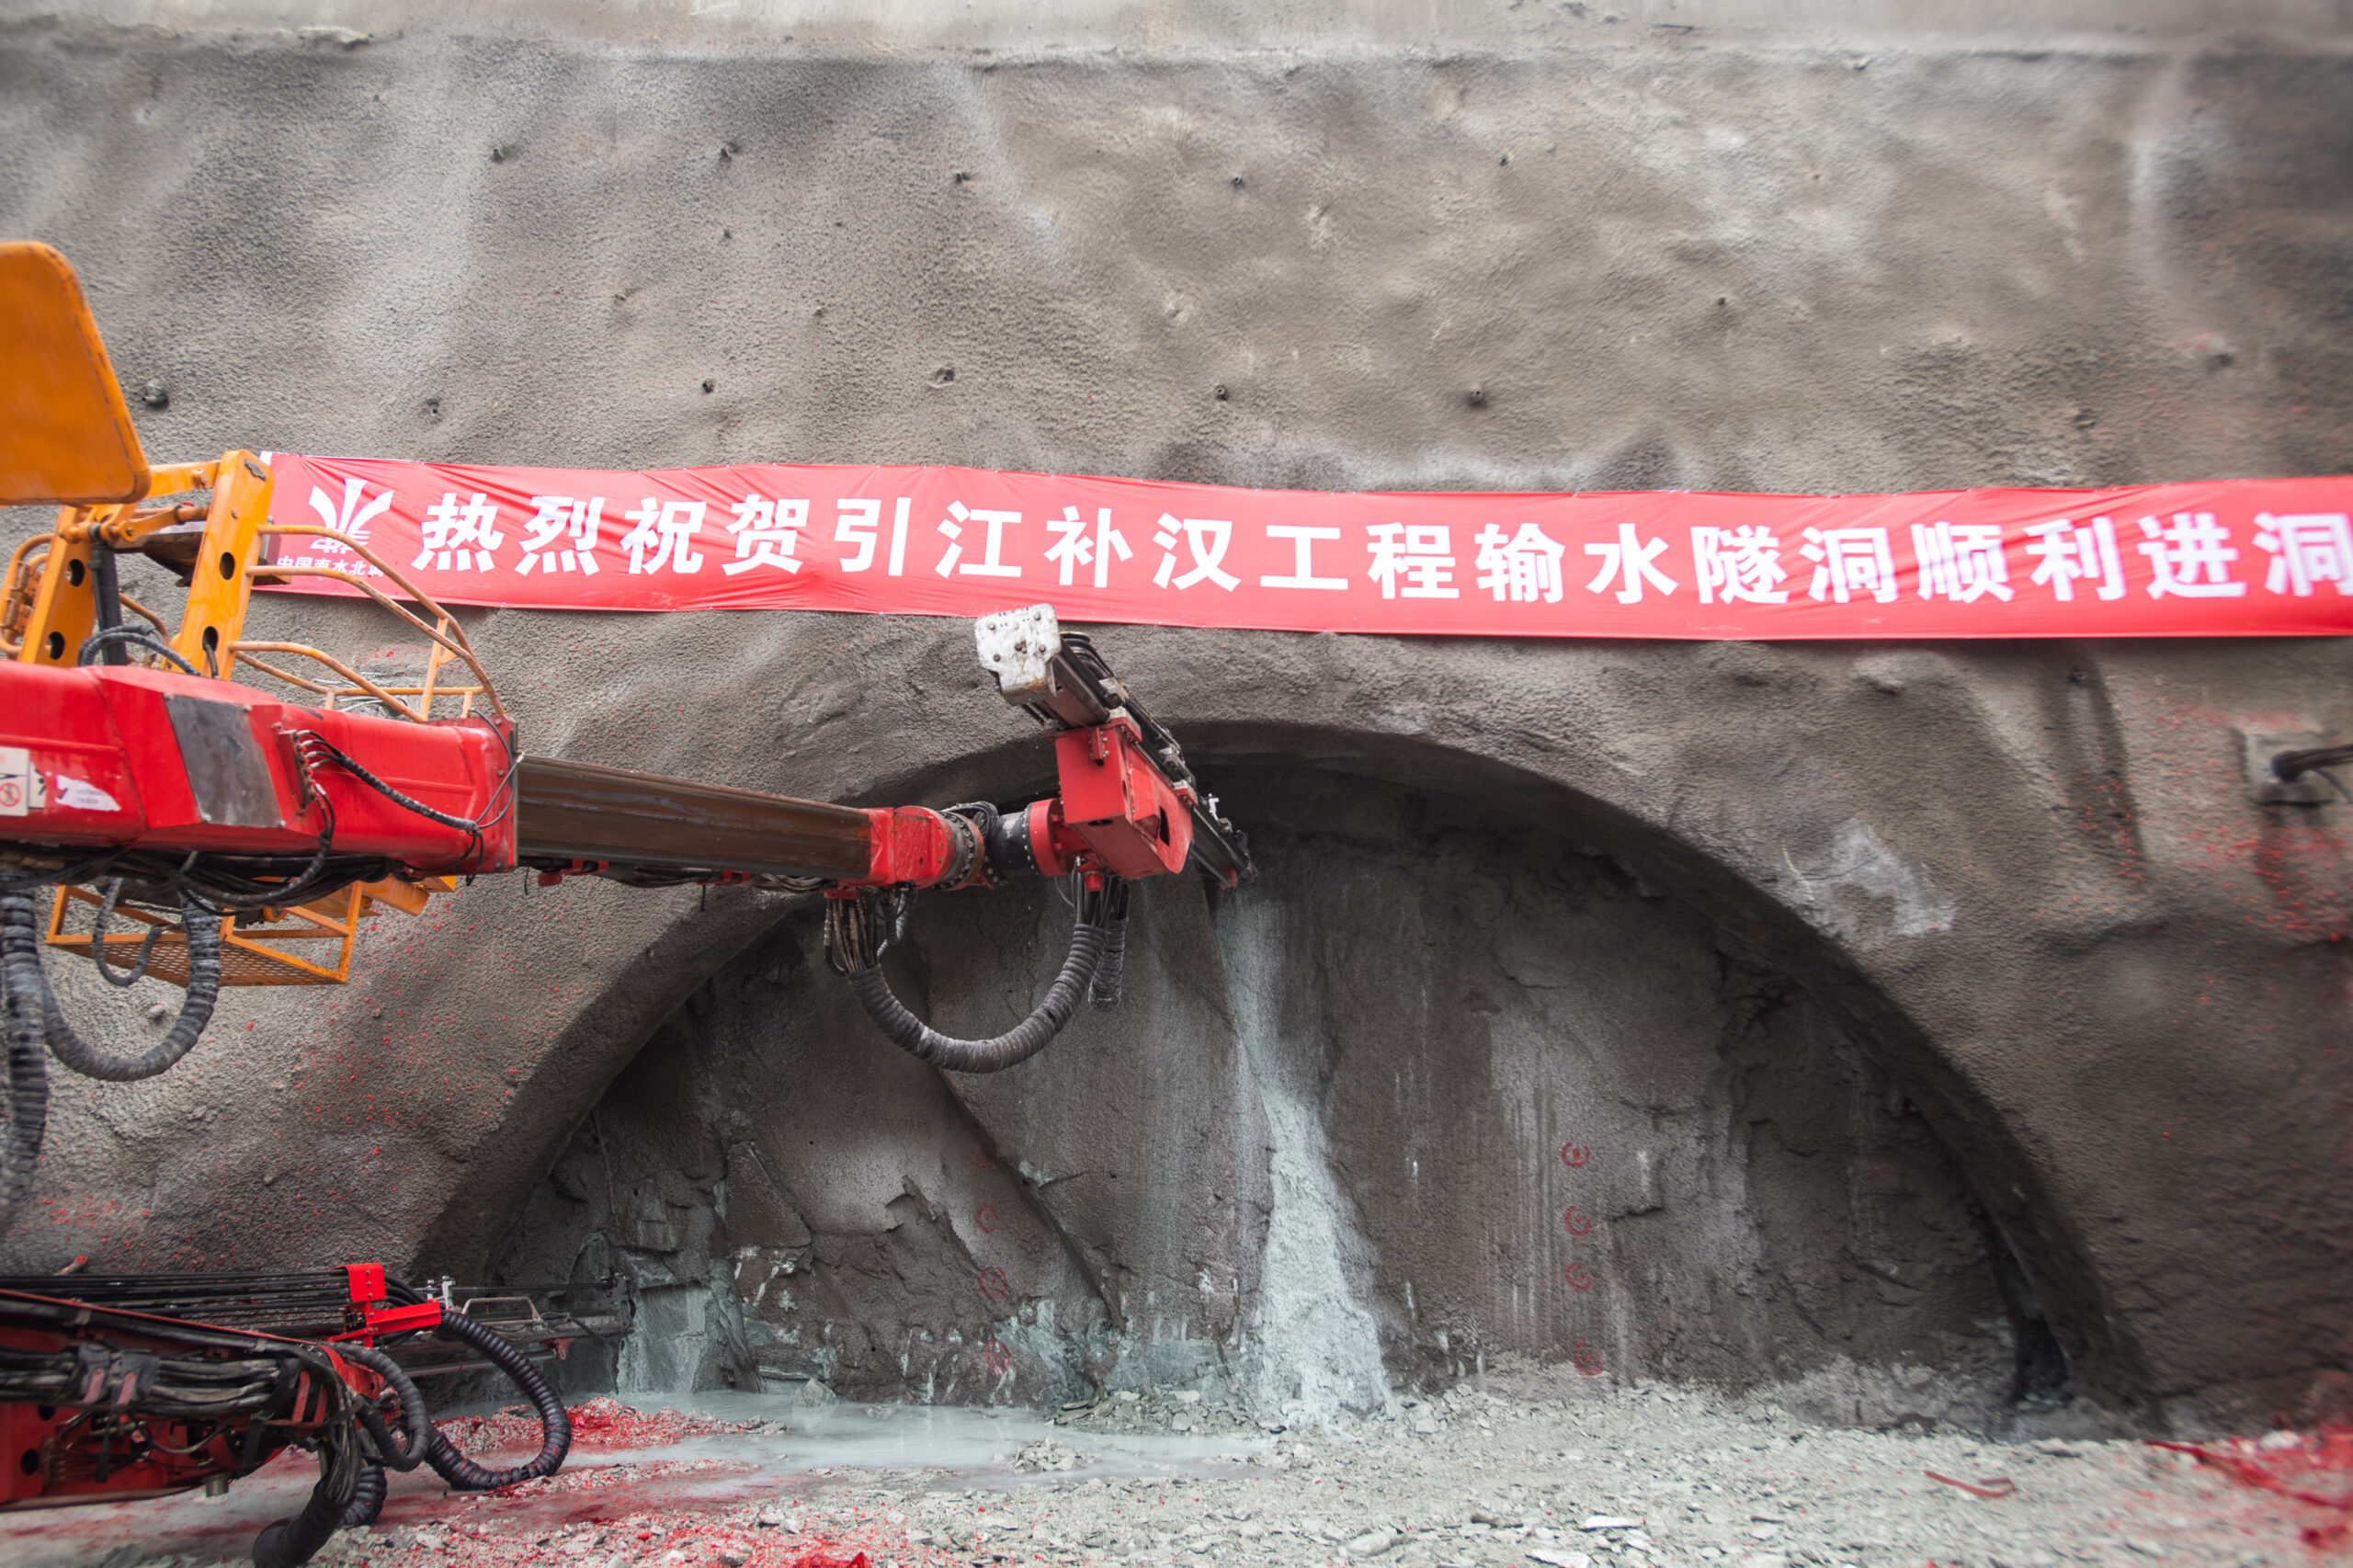 จีนเริ่มสร้าง 'อุโมงค์ส่งน้ำใต้ดิน' ในตานเจียงโข่ว